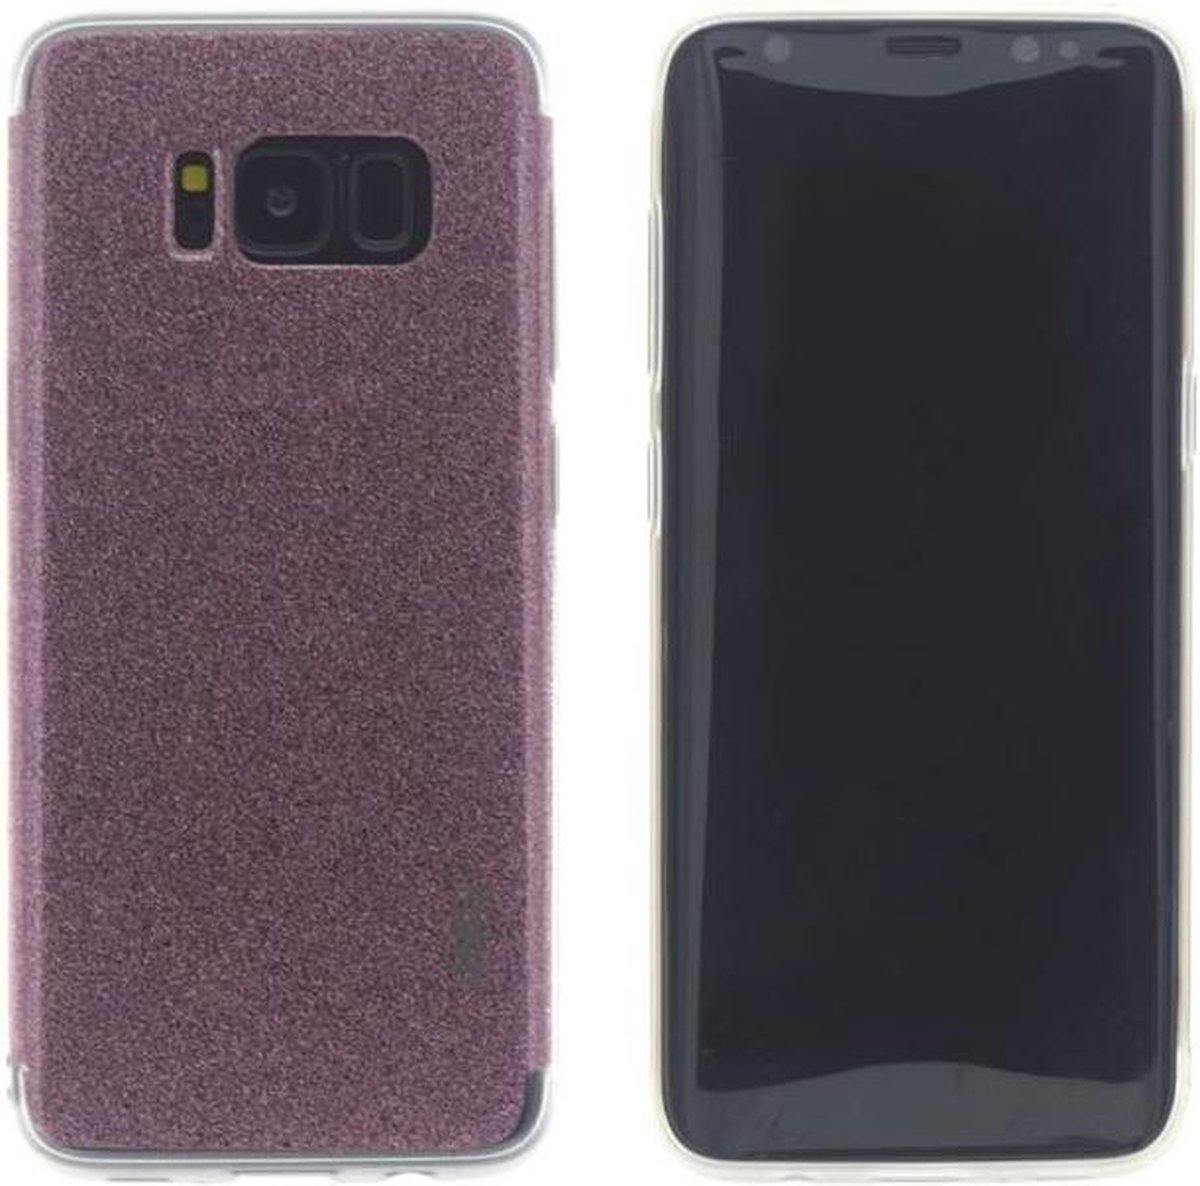 UNIQ Accessory Galaxy S8 Back Cover hoesje glitter - Roze (G950F)